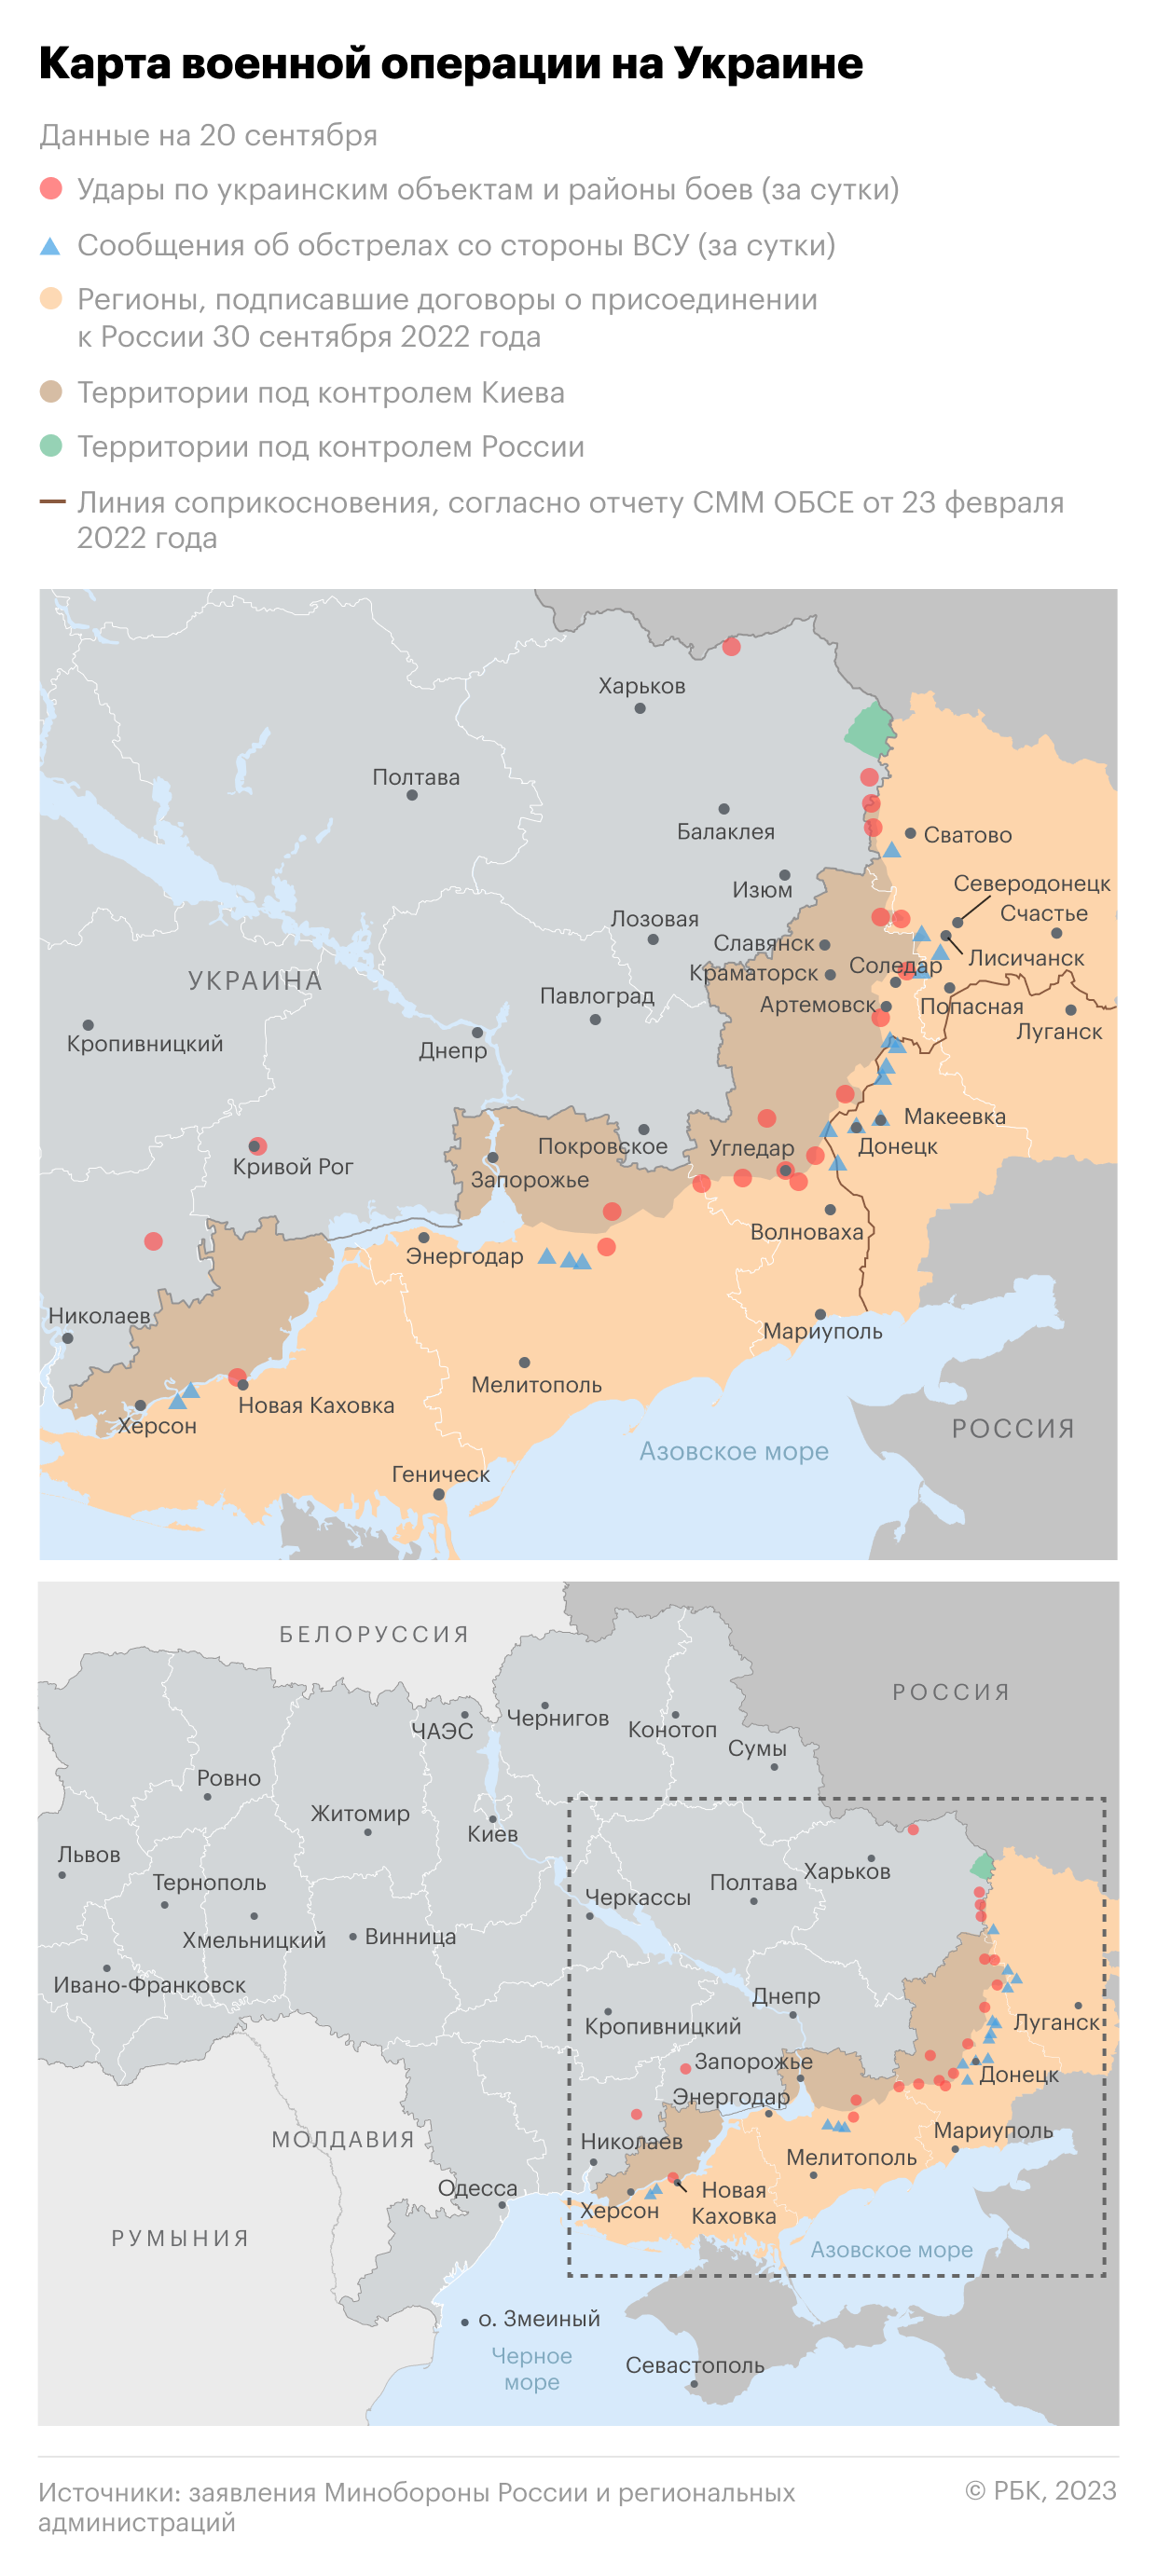 Военная операция на Украине. Карта на 20 сентября